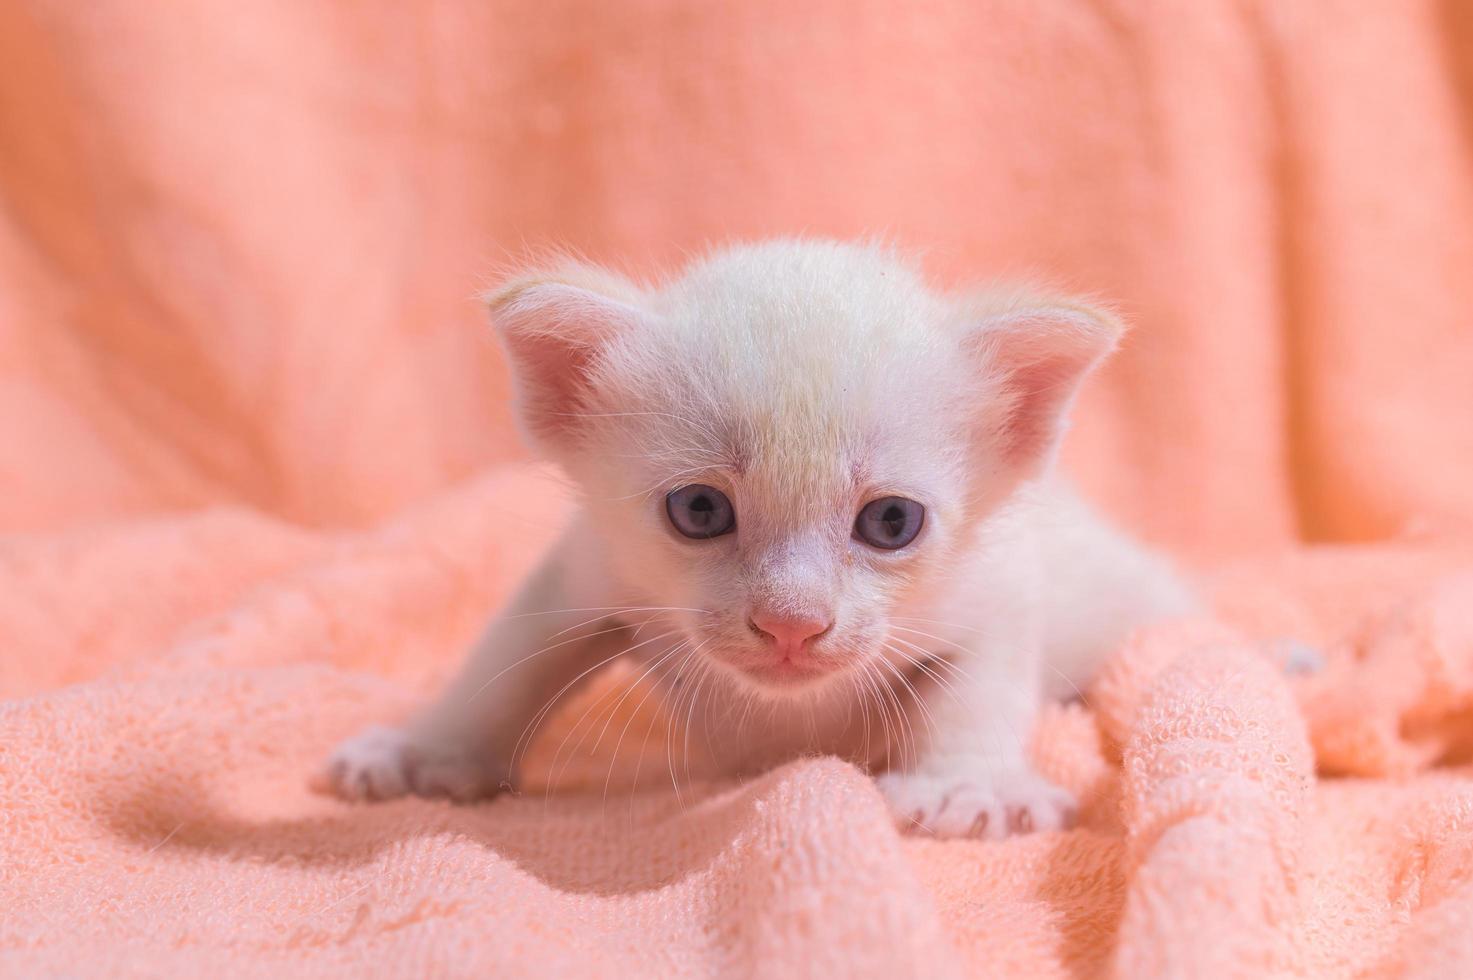 un mignon chaton blanc sur une serviette photo